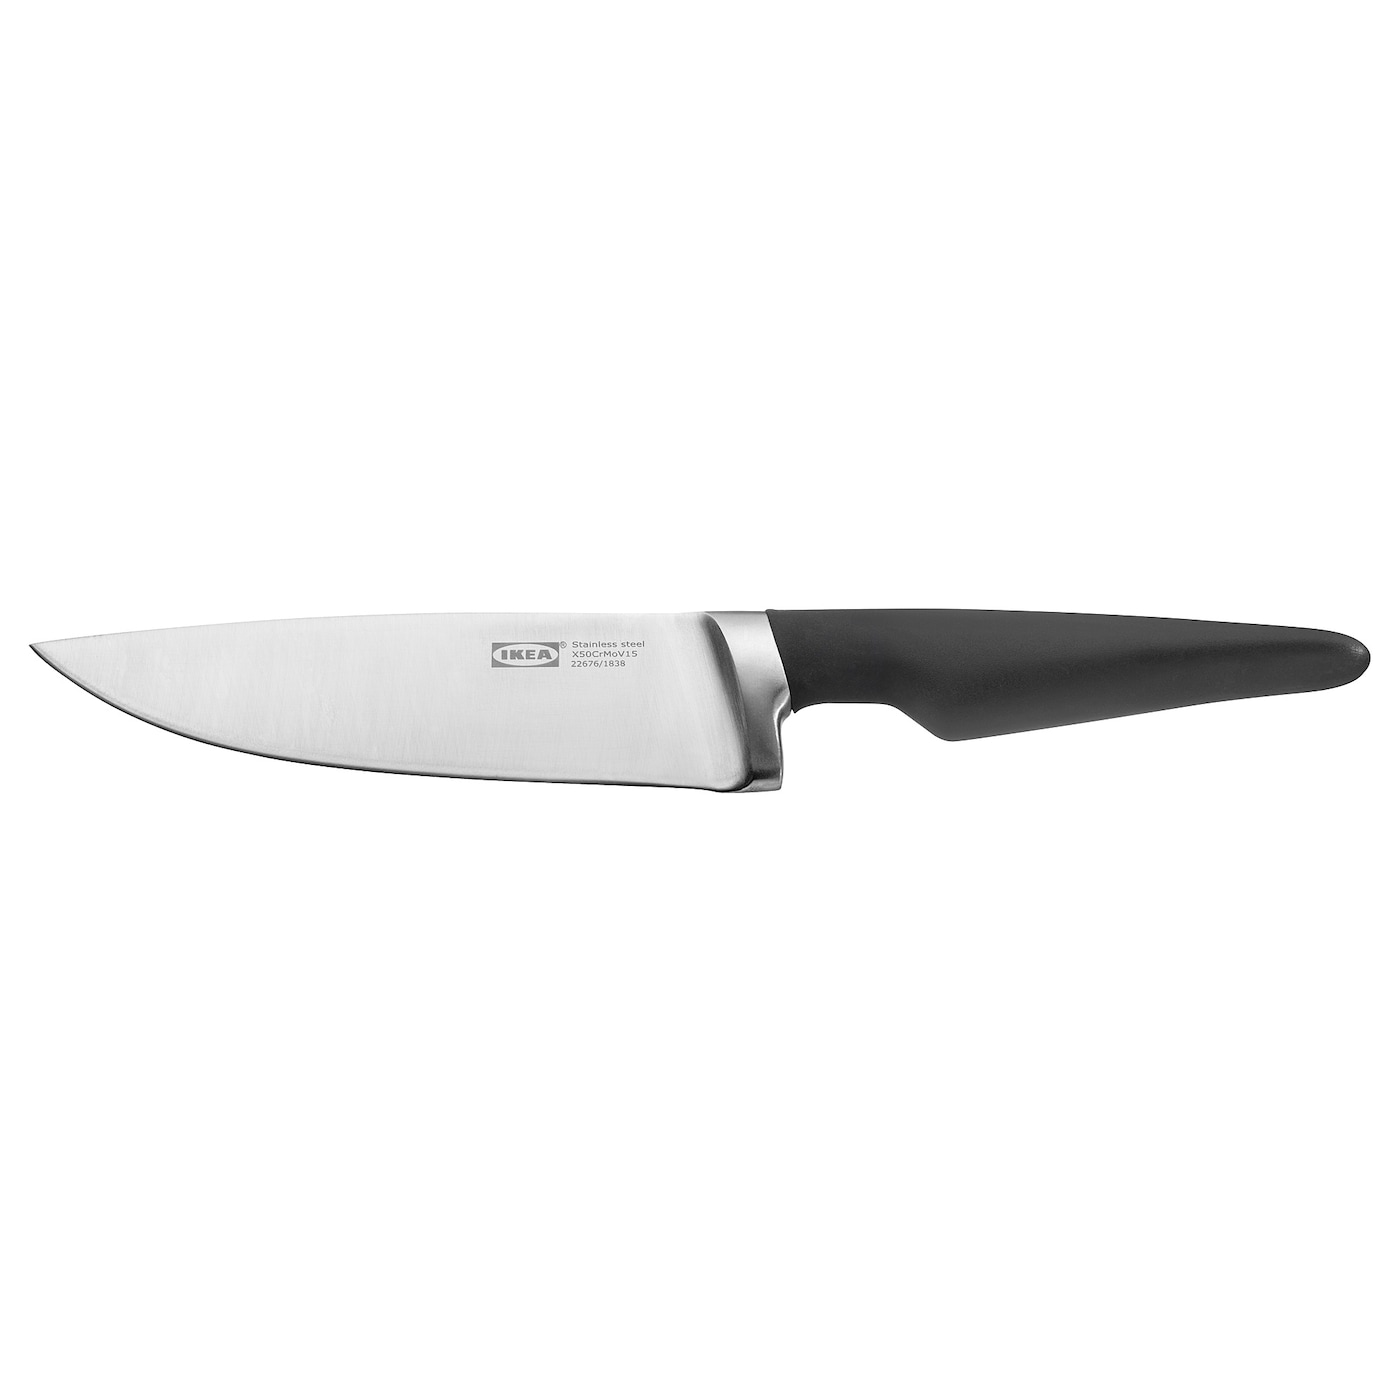 VÖRDA ВЁРДА Нож поварской, черный, 17 см IKEA